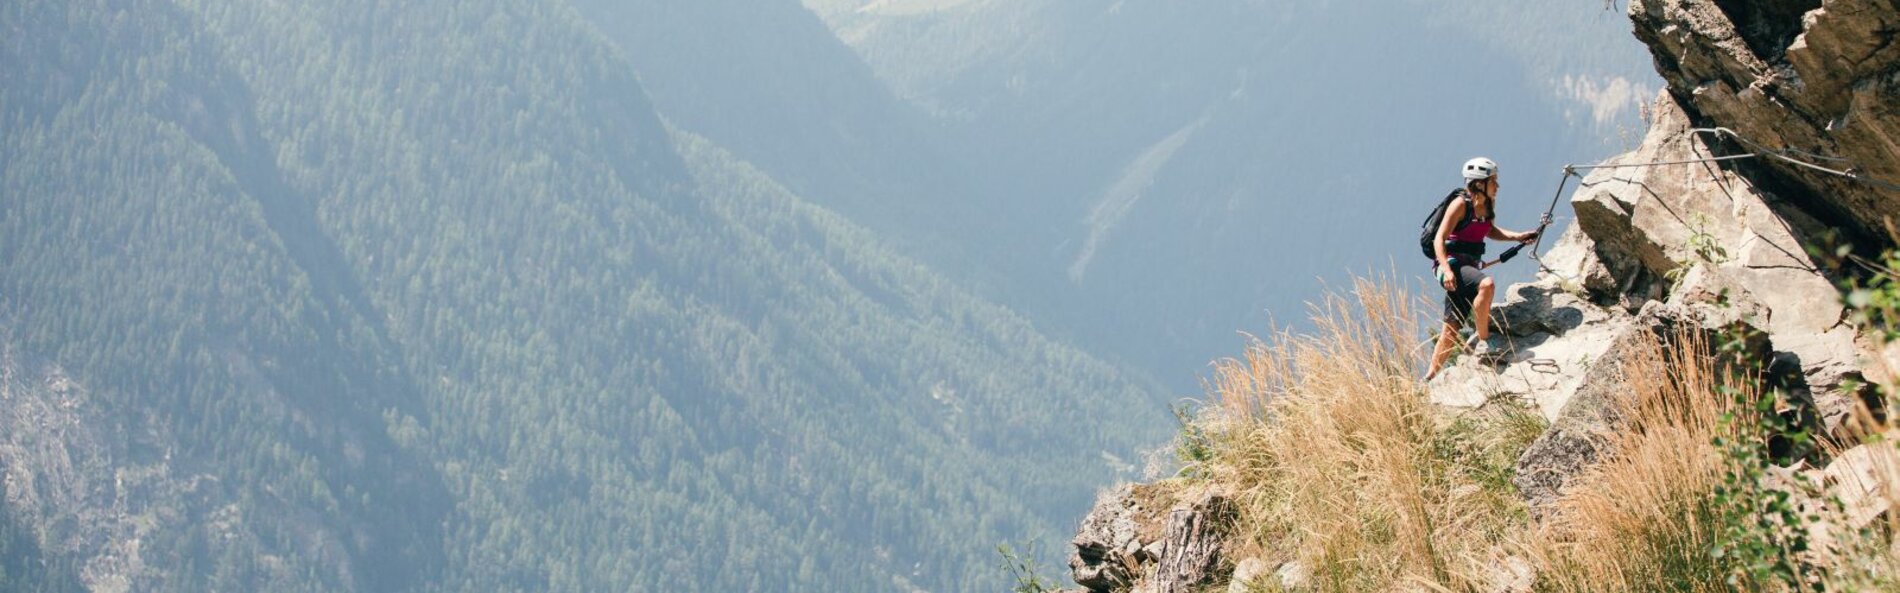 Eine Frau kletten in Klettersteigausrüstung entlang eines Drahtseil eine bewachsene Felswand entlang. Im Hintergrund sind bewaldete Berghänge und Täler.